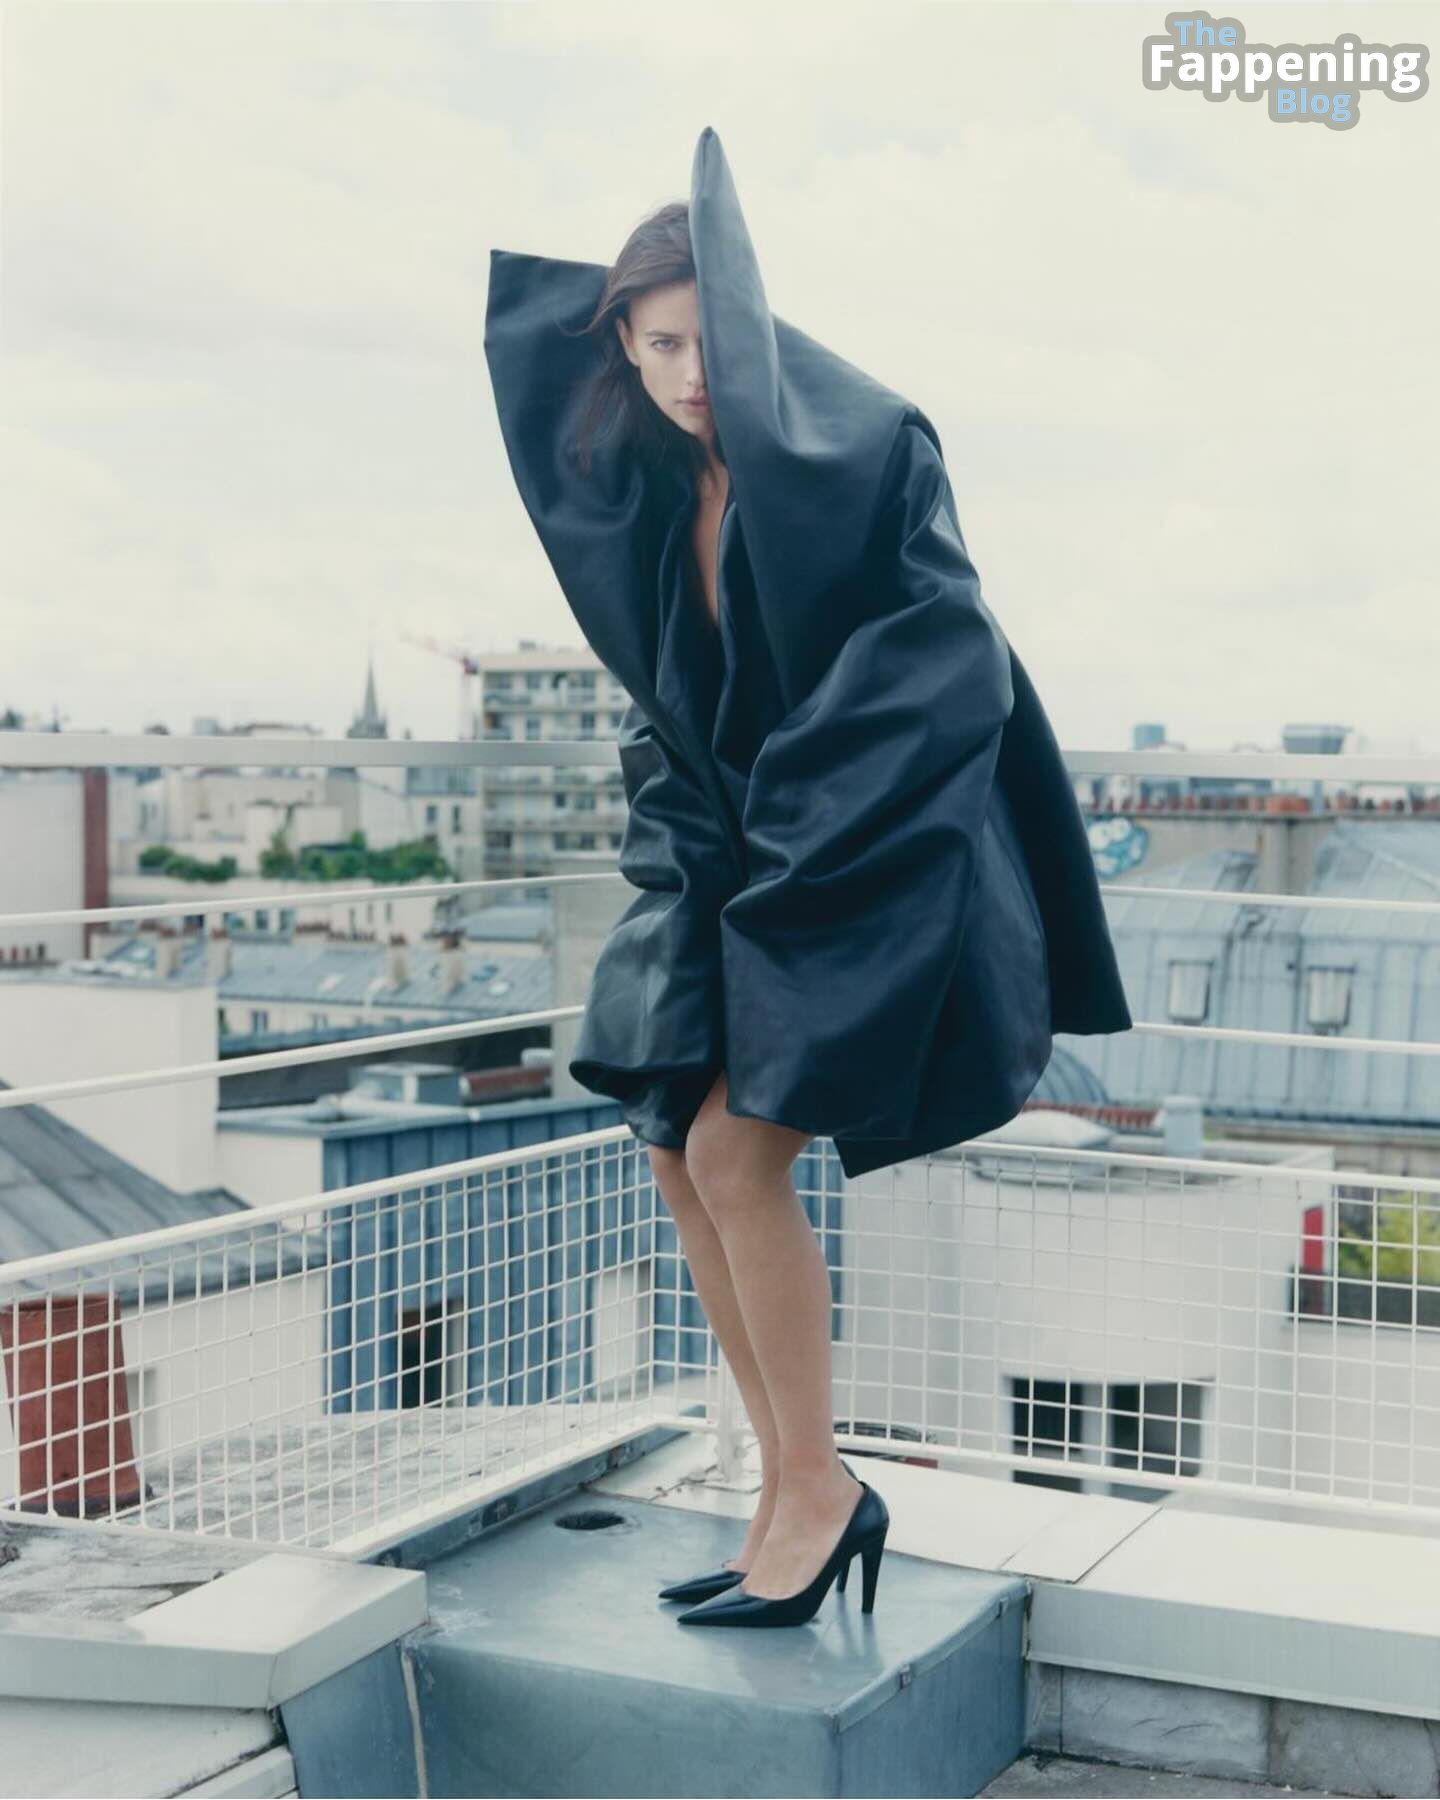 Irina Shayk Hot – 032c Magazine (4 New Photos)